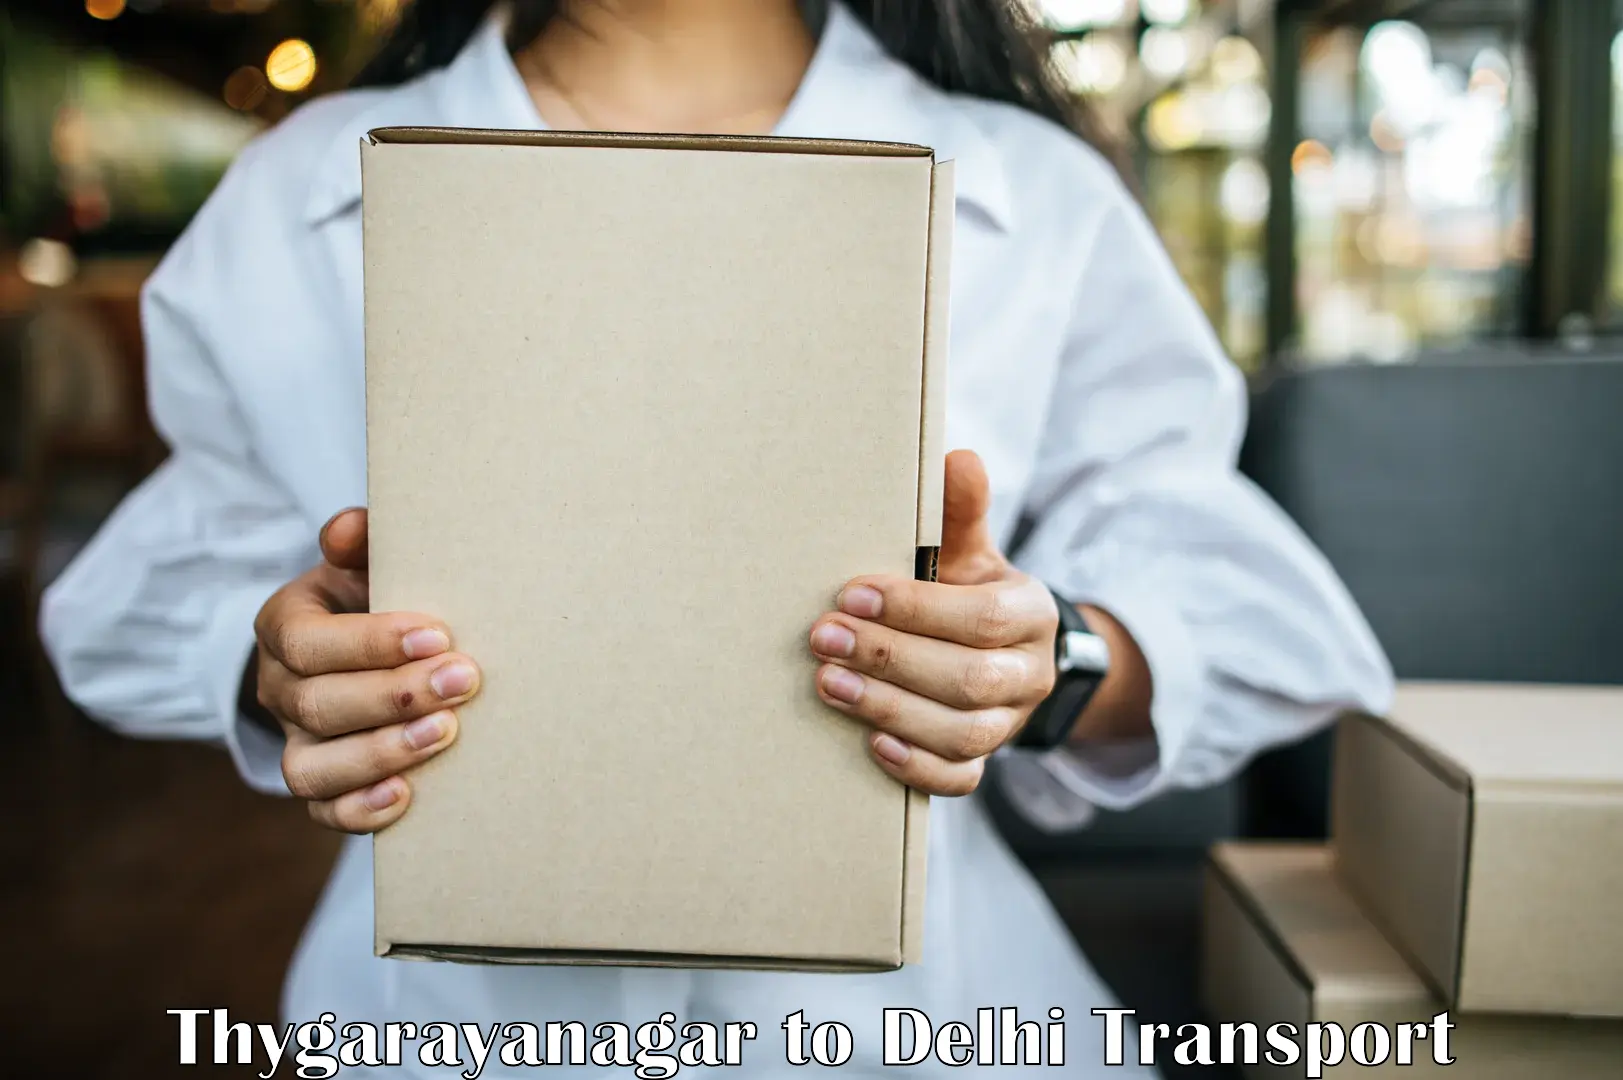 Nationwide transport services Thygarayanagar to IIT Delhi